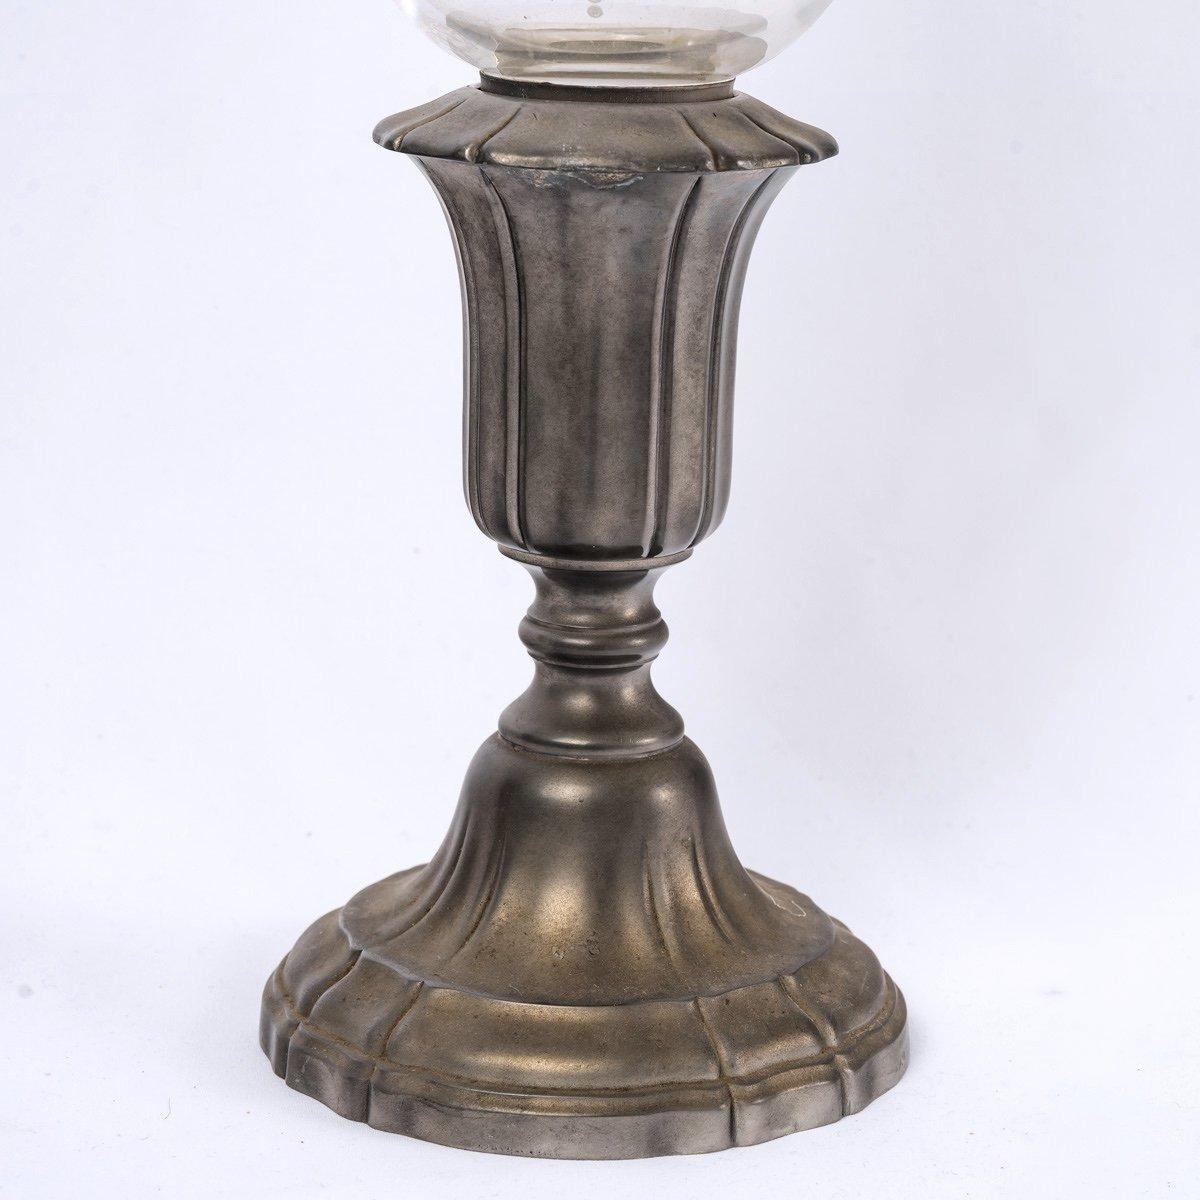 Der Kerzenständer ist aus Baccarat-Kristall gefertigt und mit einem schönen Renaissance-Dekor aus Schnecken, Arabesken und pflanzlichen Voluten graviert.
Der Kerzenhalter ist aus Zinn der Firma 